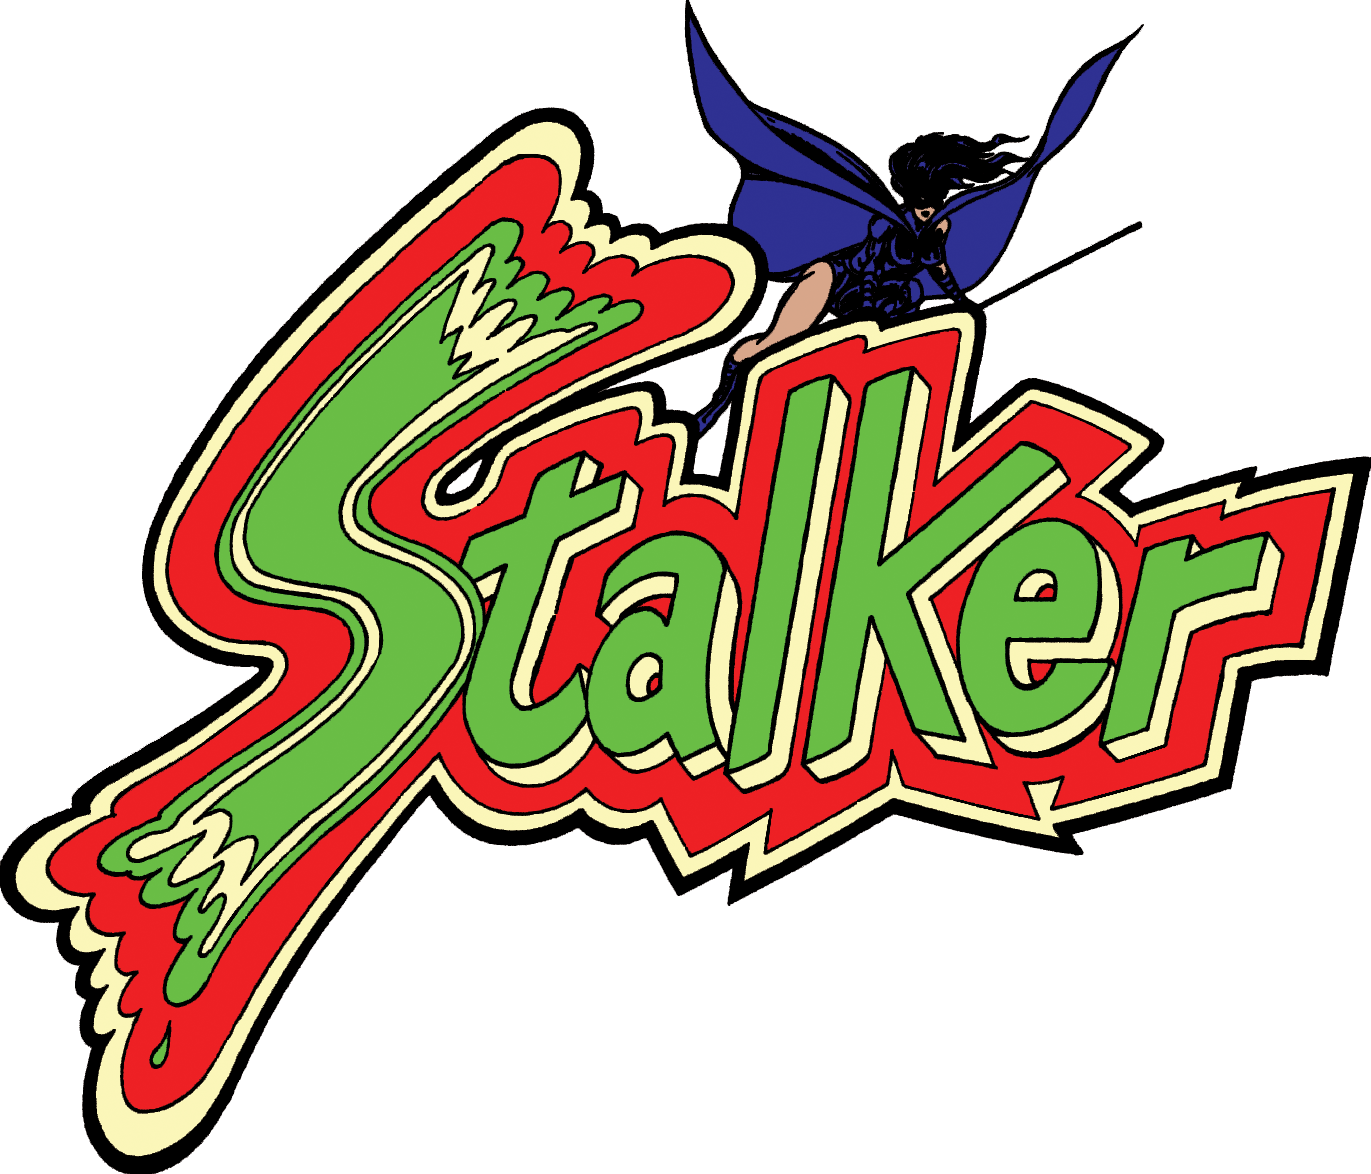 Stalker Vol - Gateway (1371x1174)